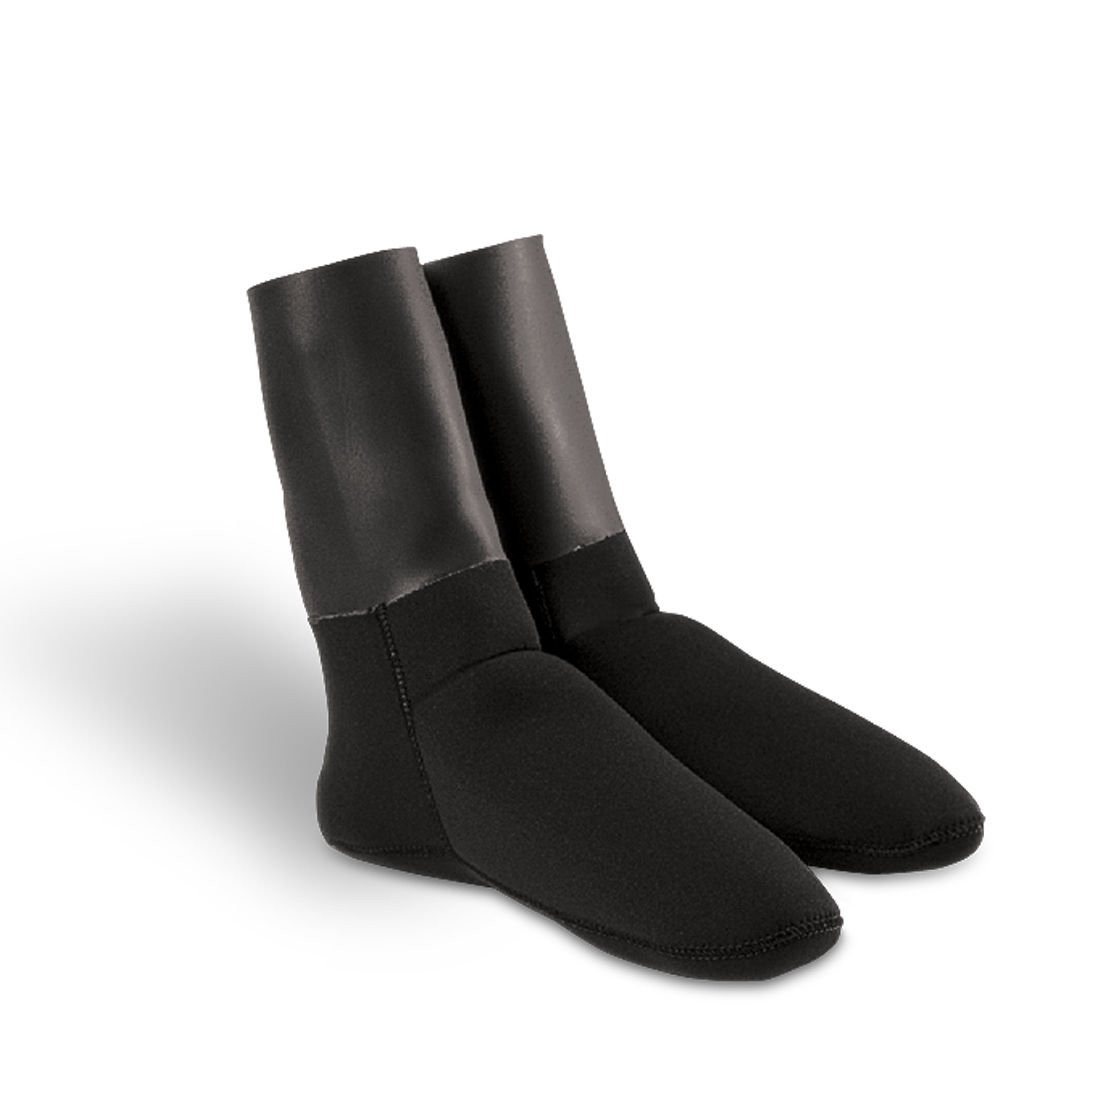 O.M.E.R Bilek Contalı 3,00 mm Dalış Çorabı